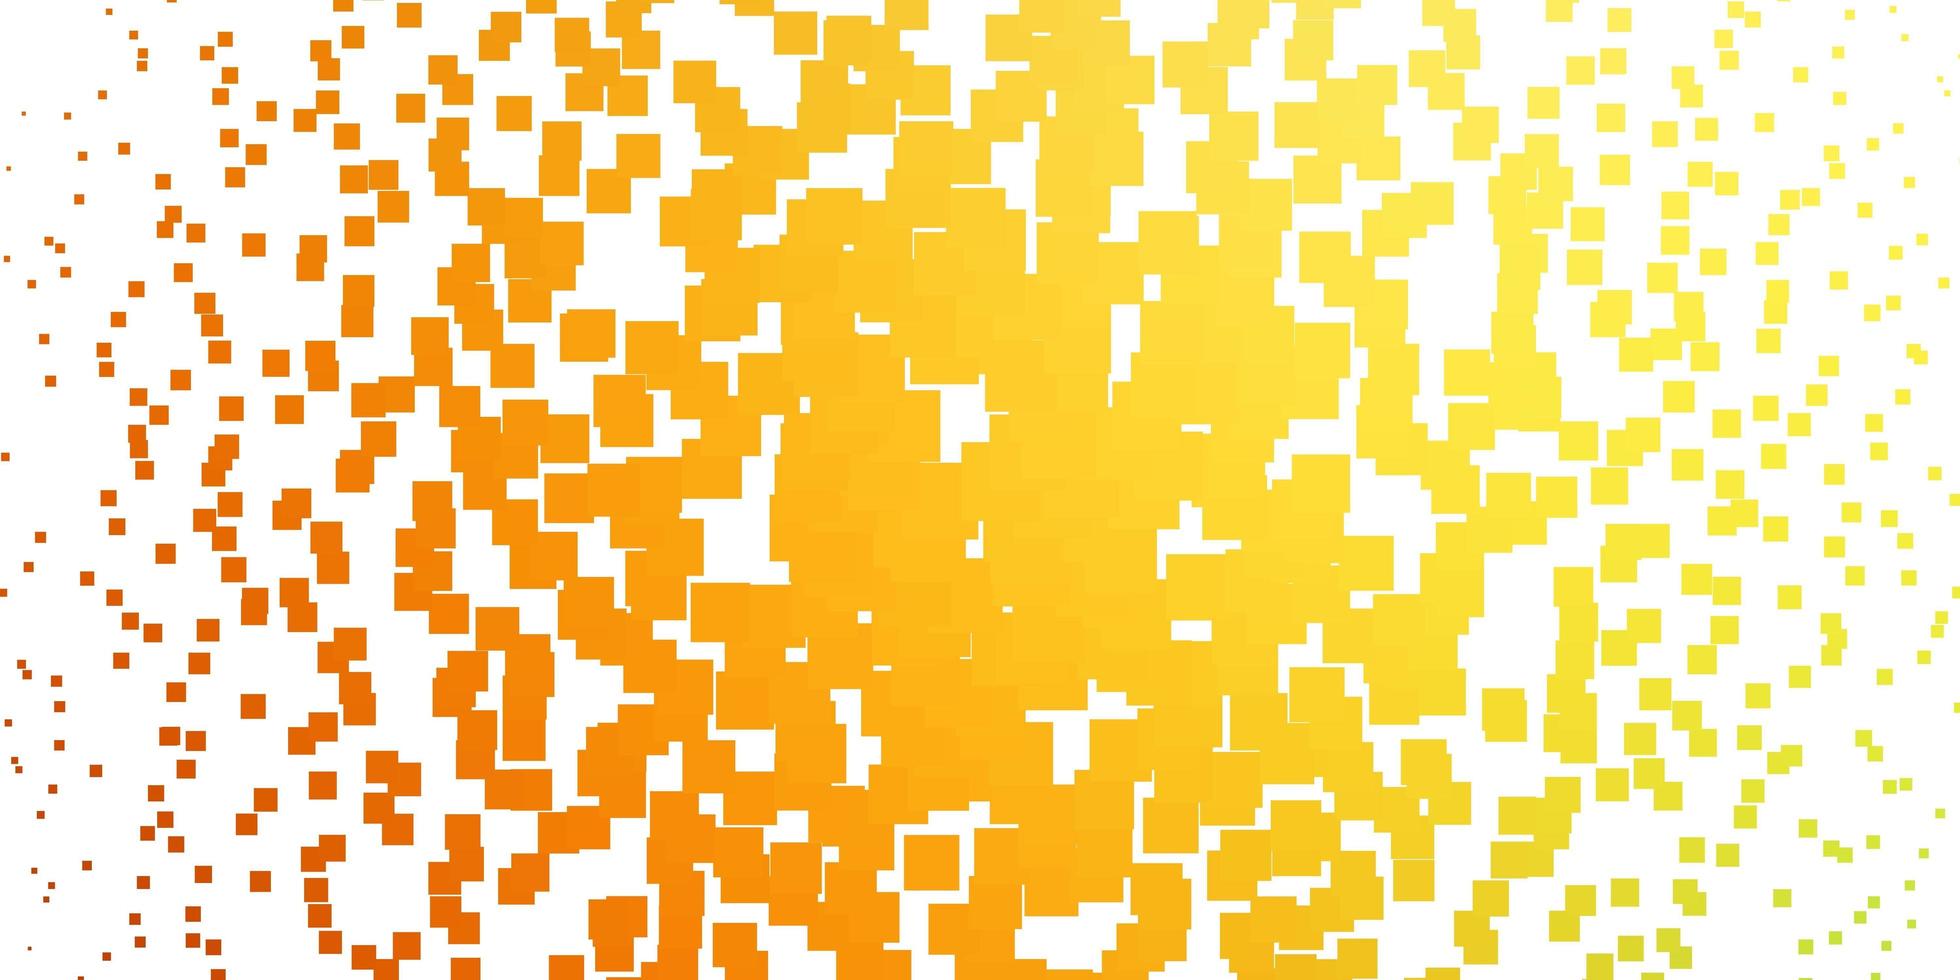 lichtgroene, gele vectorachtergrond met rechthoeken. nieuwe abstracte illustratie met rechthoekige vormen. ontwerp voor uw bedrijfspromotie. vector